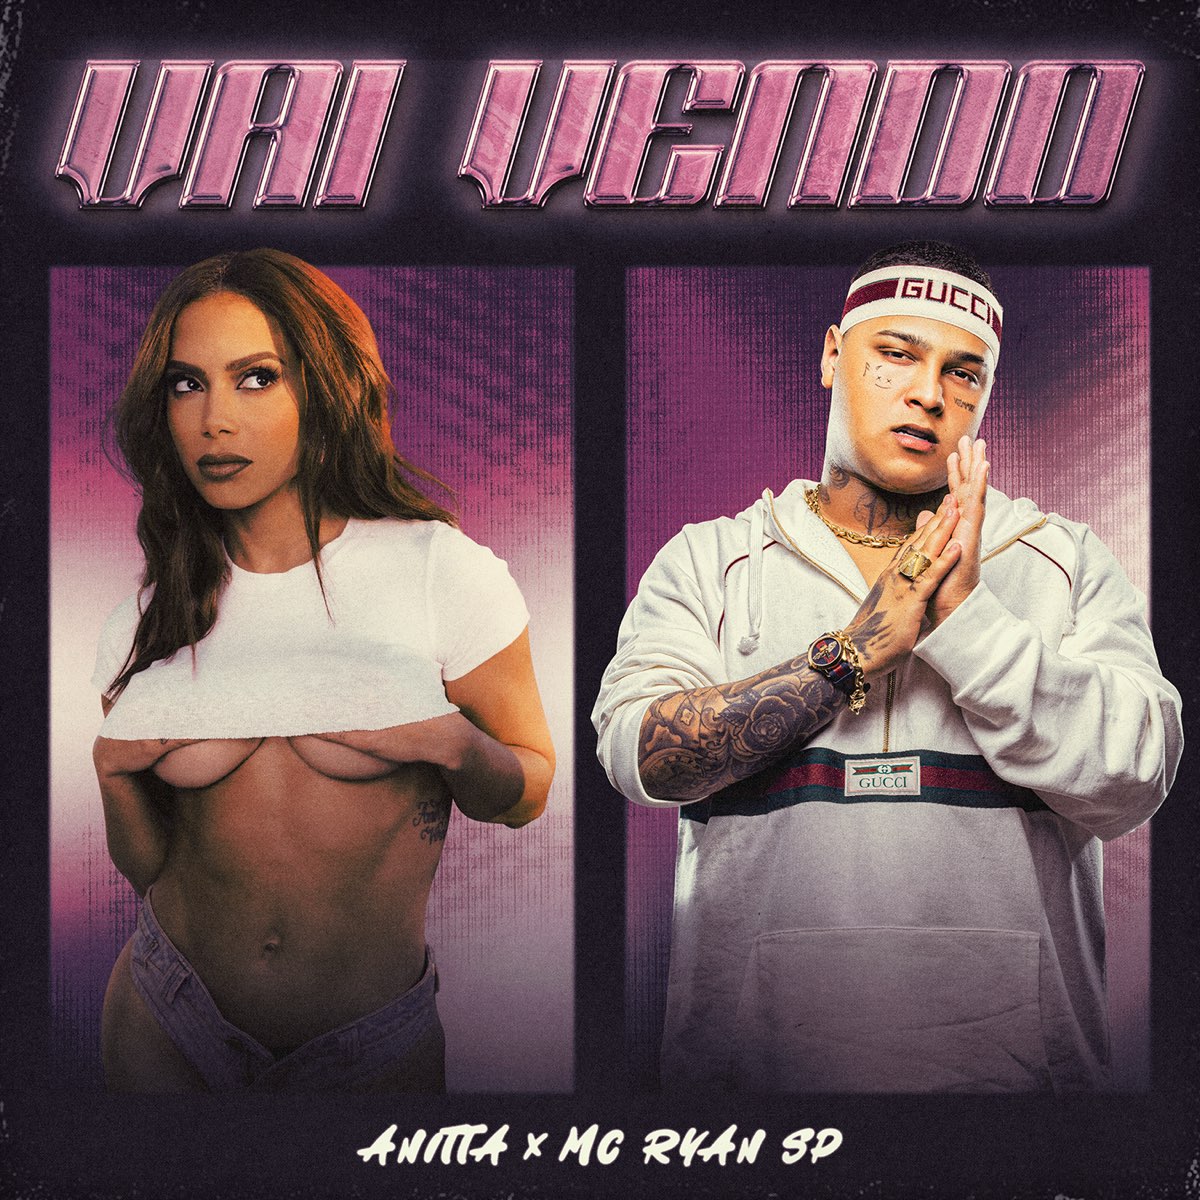 Anitta featuring MC Ryan SP — Vai Vendo cover artwork